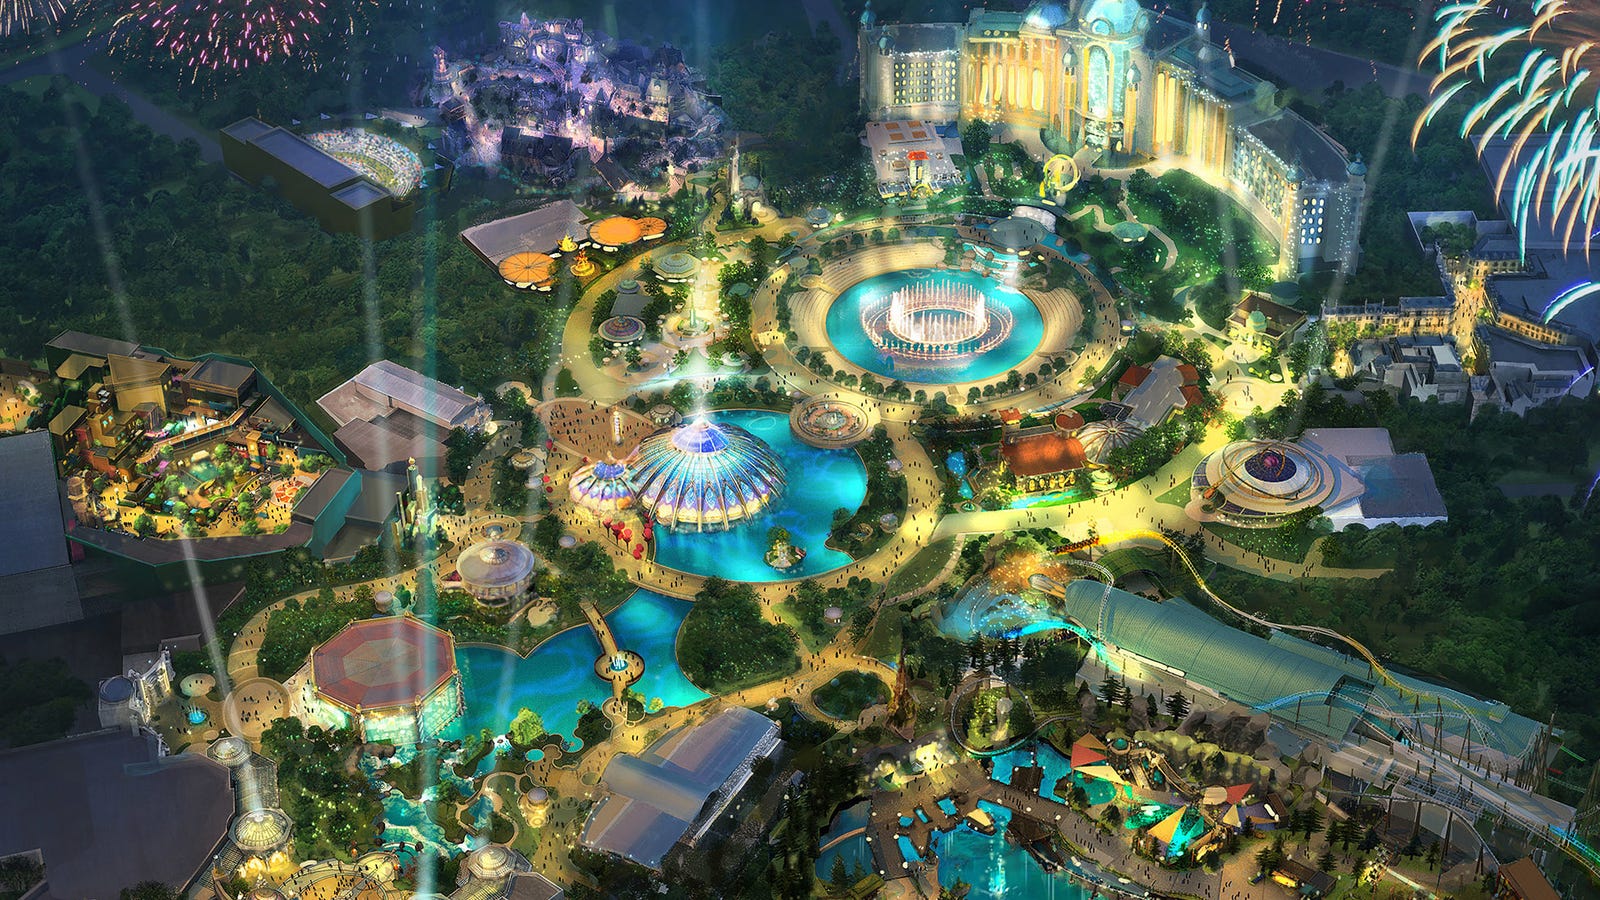 New Universal Epic Universe Theme Park Announced But No Details